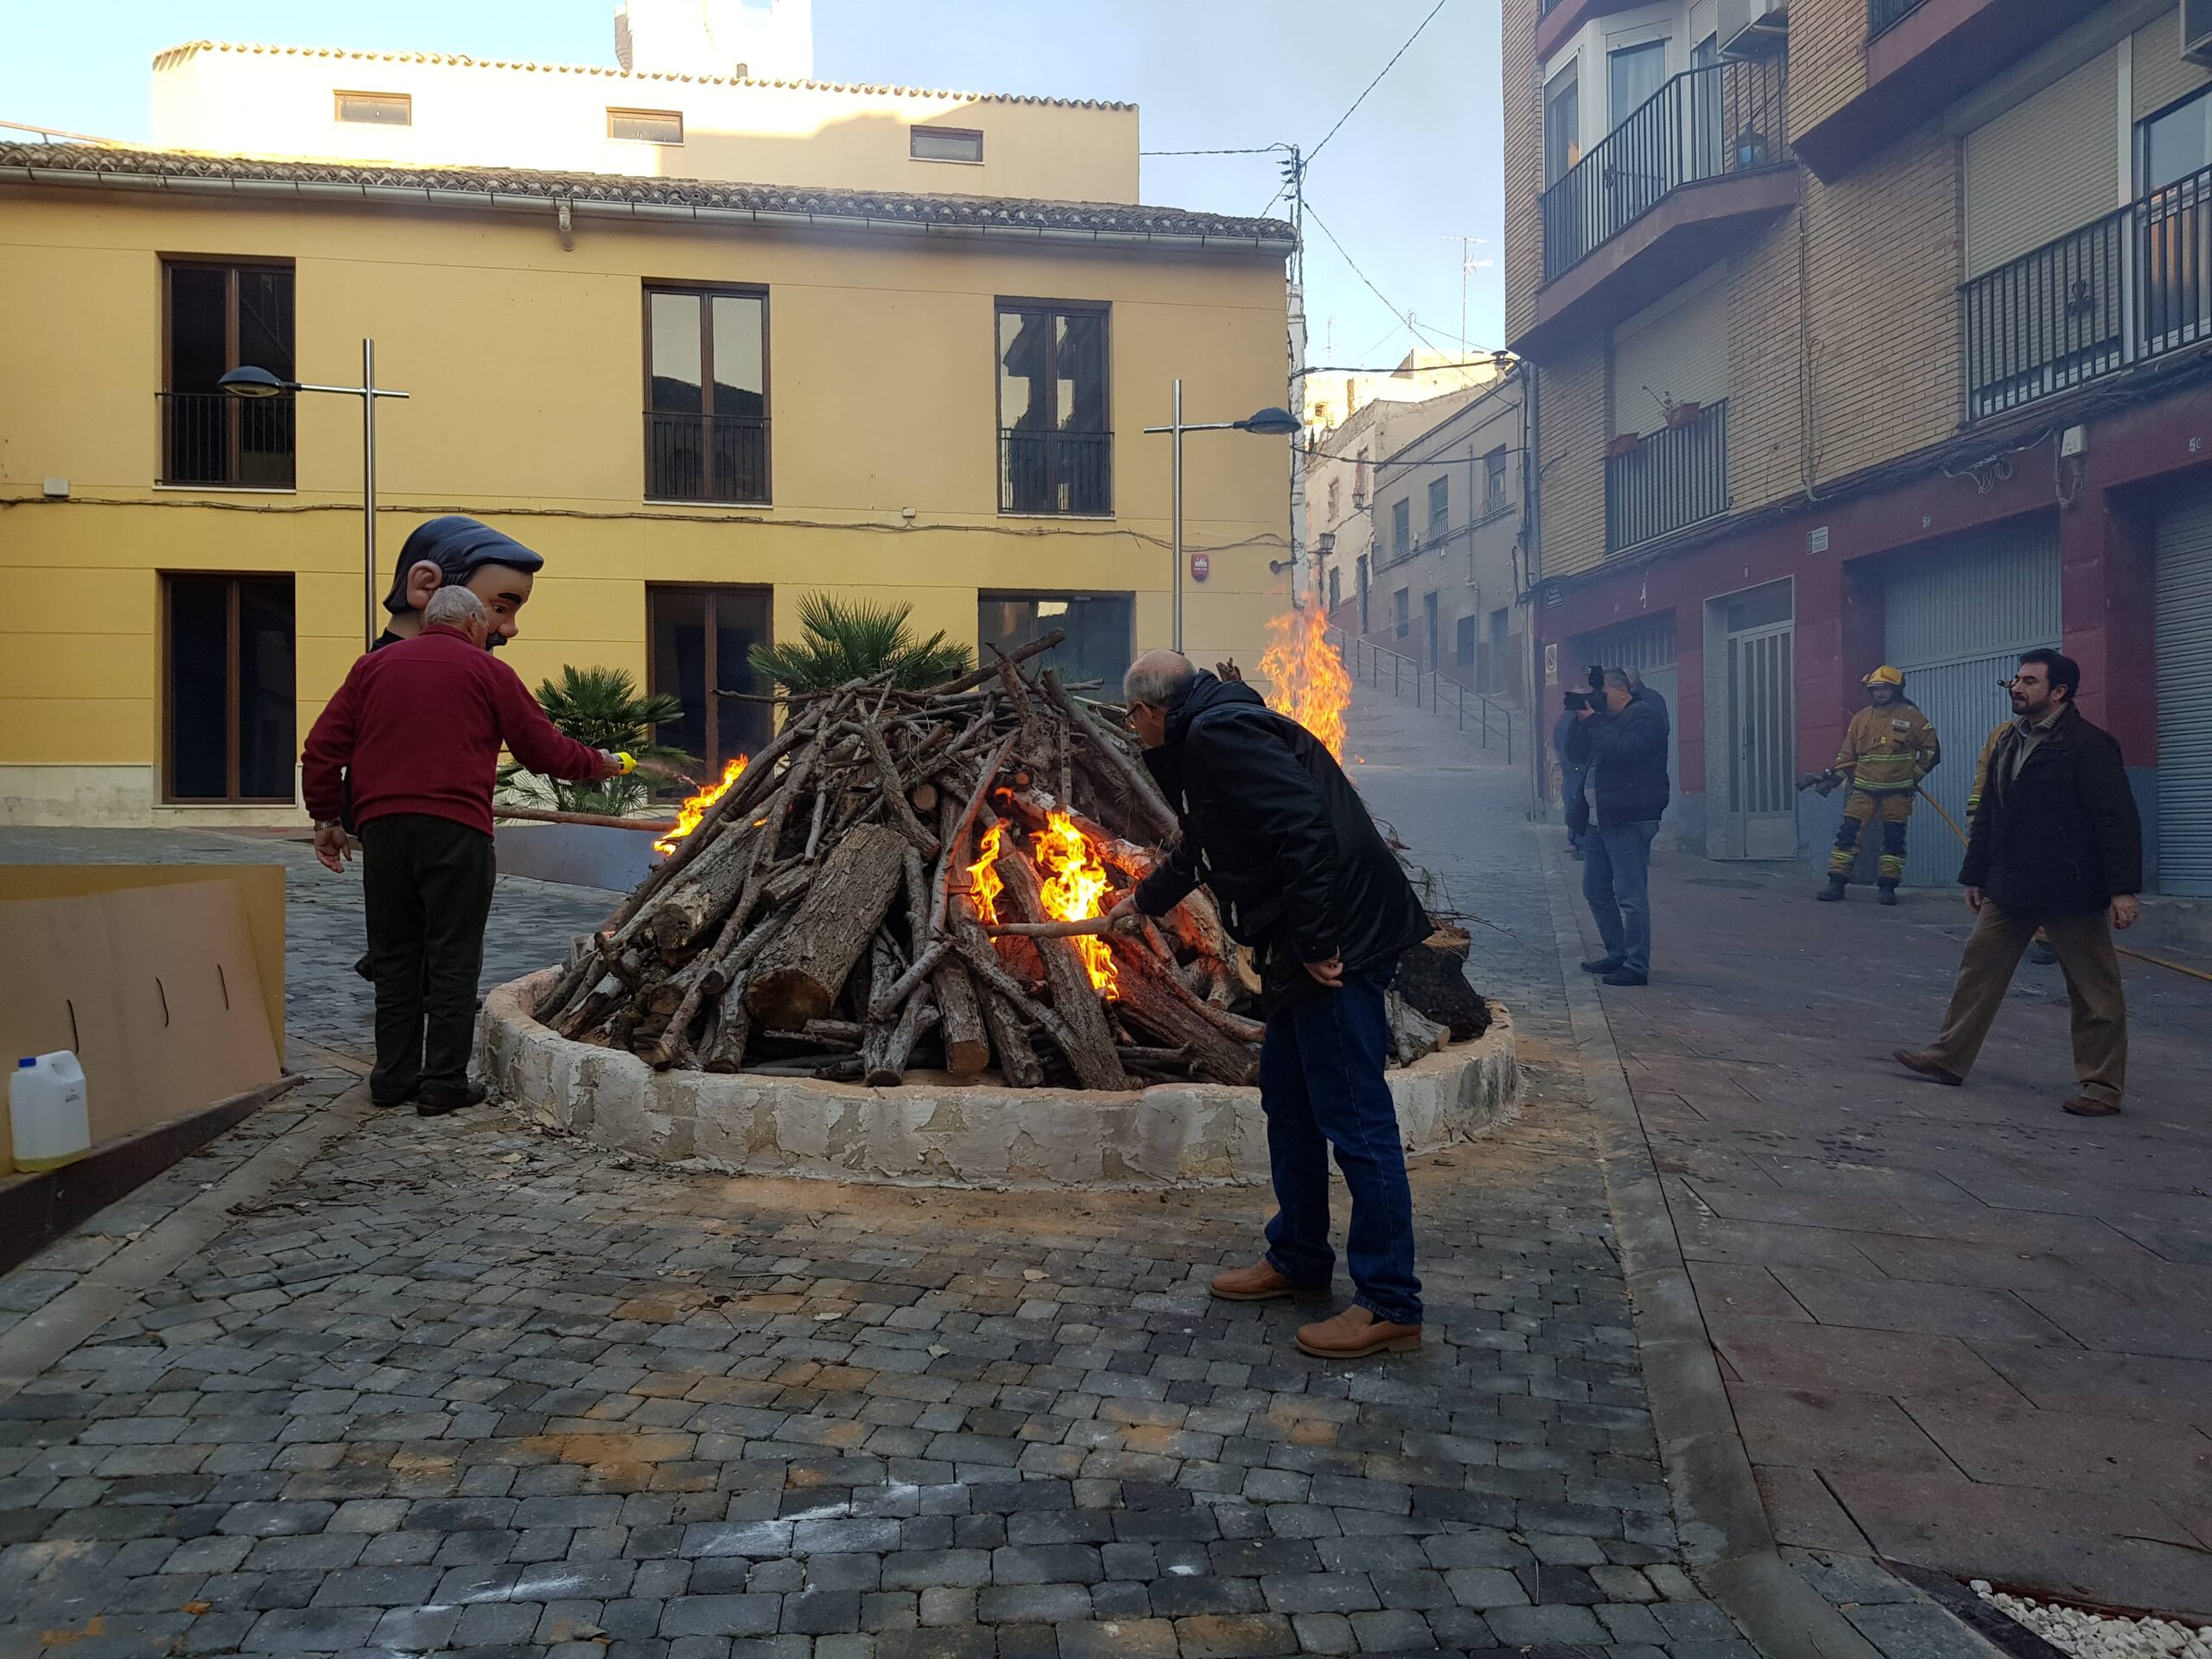 El fuego inicia la festividad de San Antón en Villena